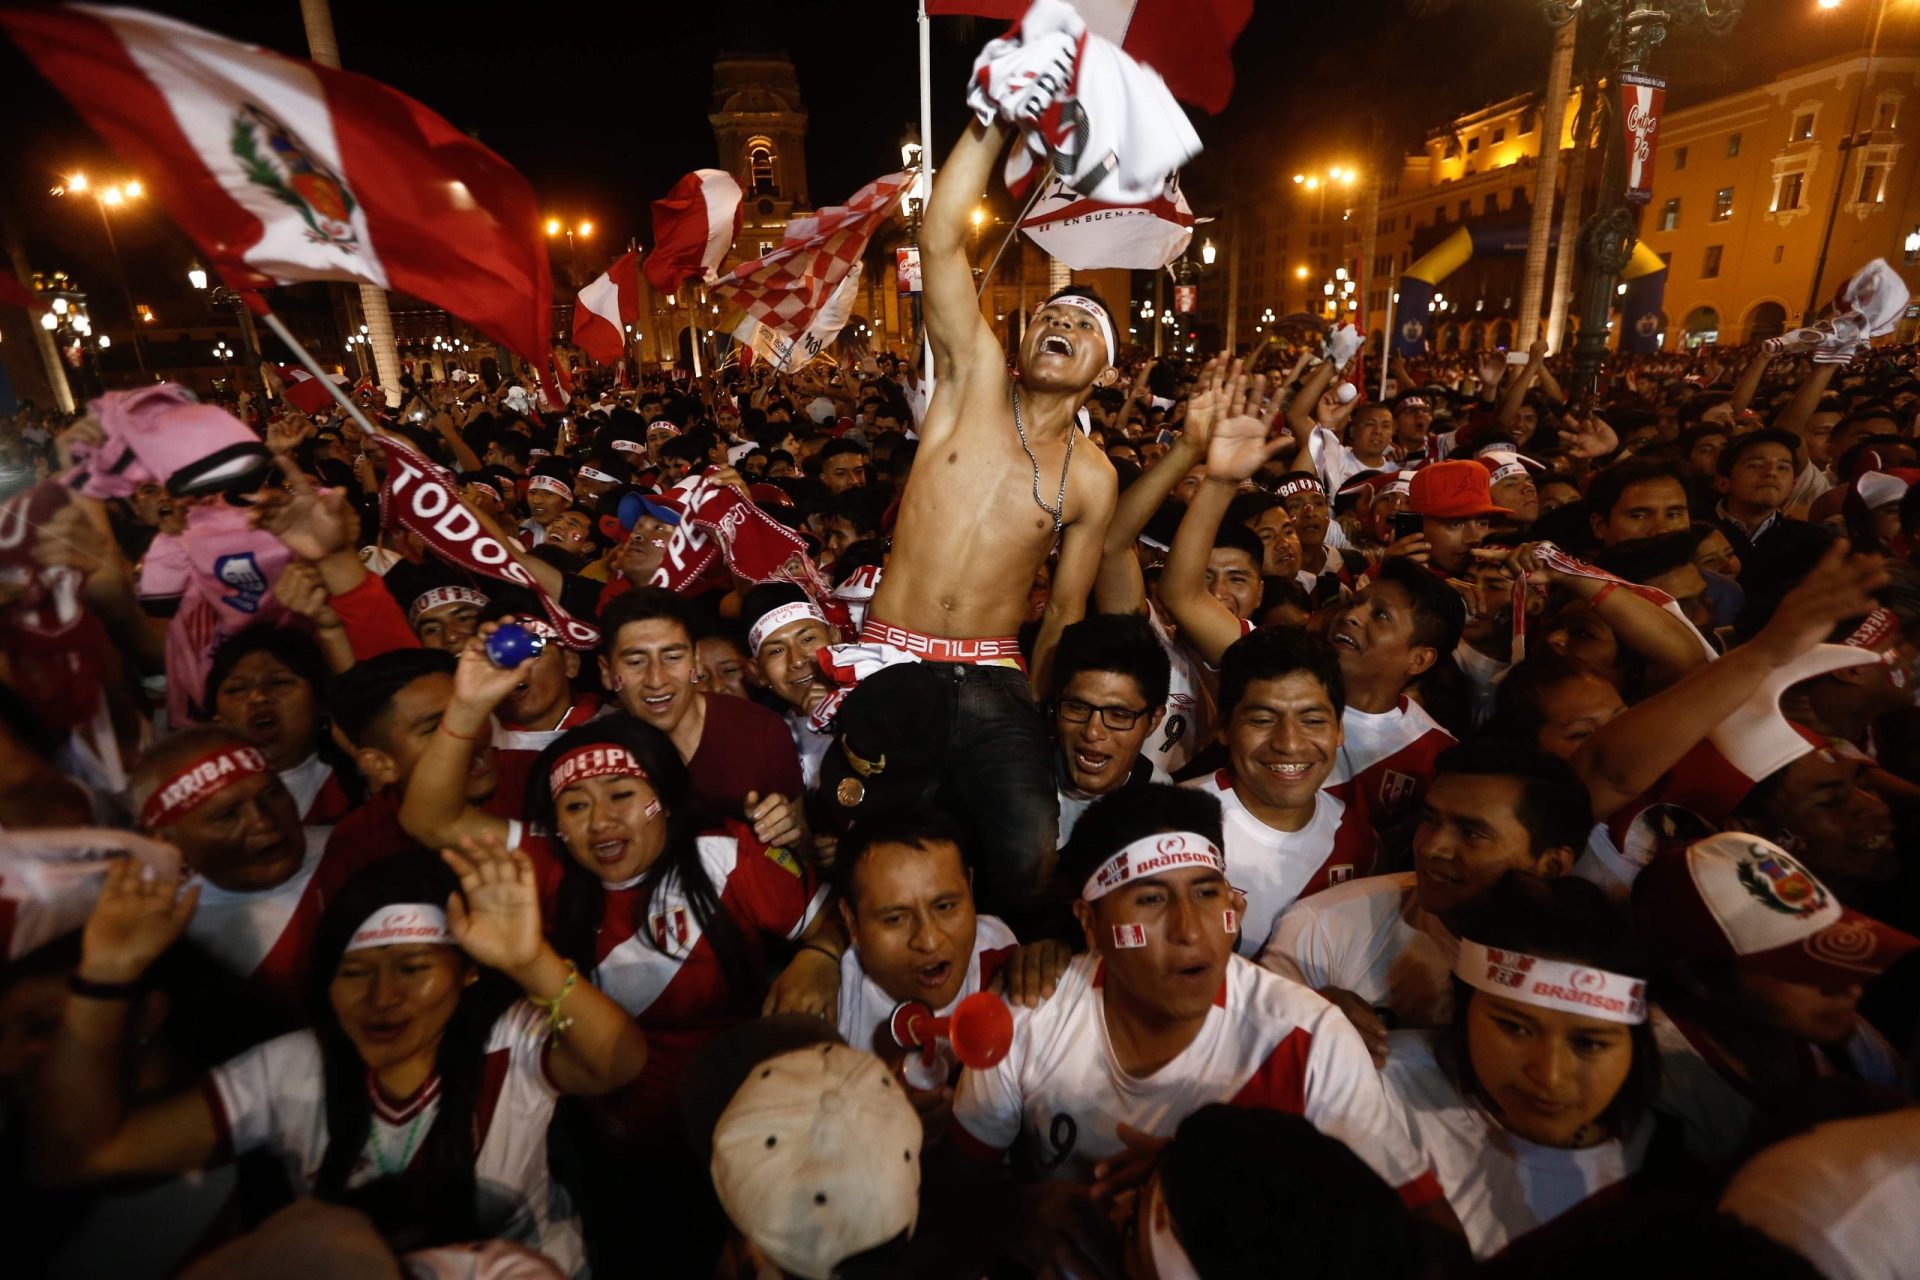 Mundial. Peruanos infernizaram a vida ao adversário antes do jogo (com vídeo)